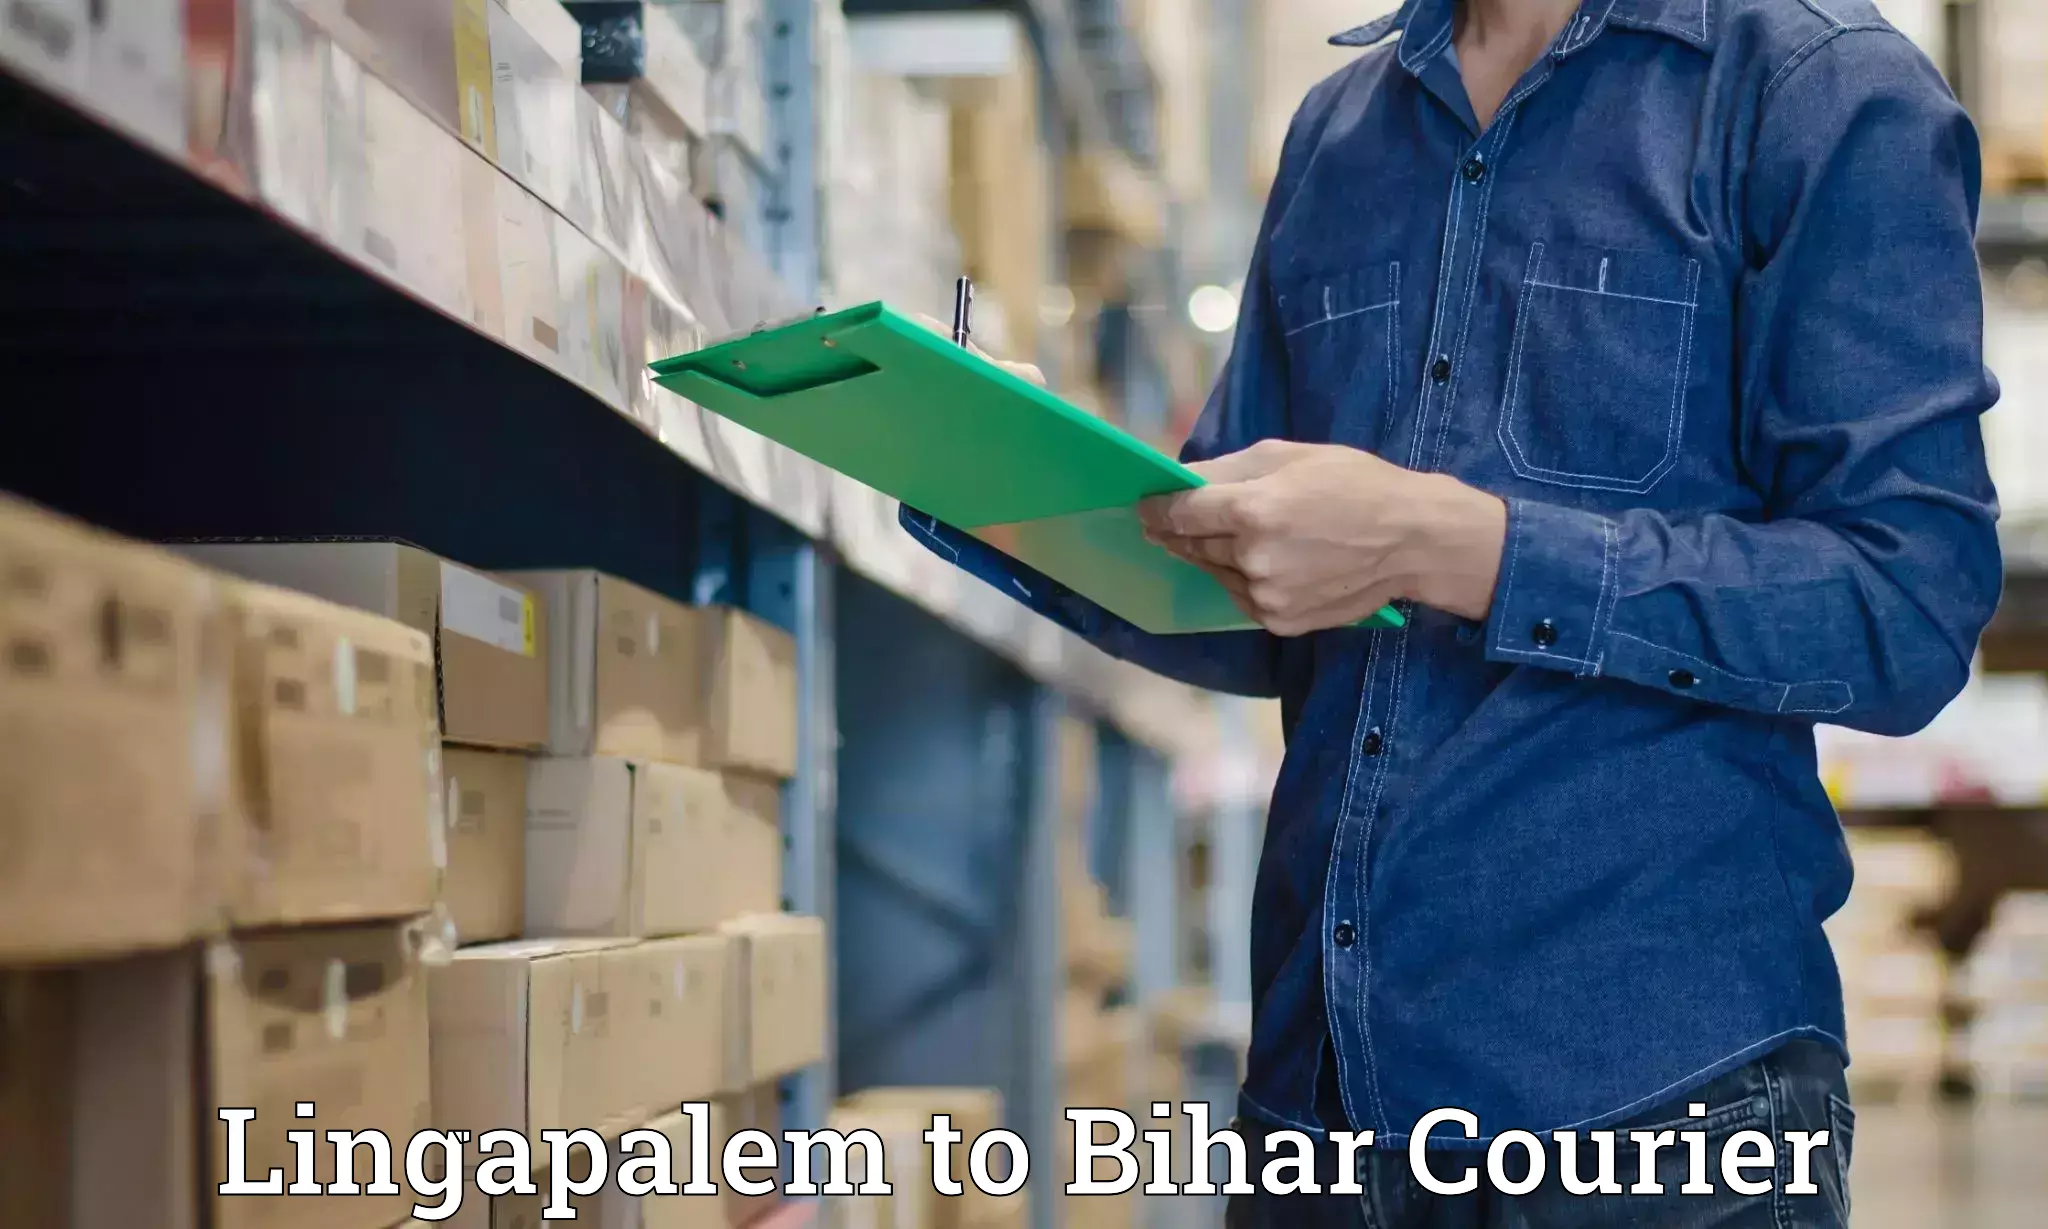 Global delivery options Lingapalem to Barhiya